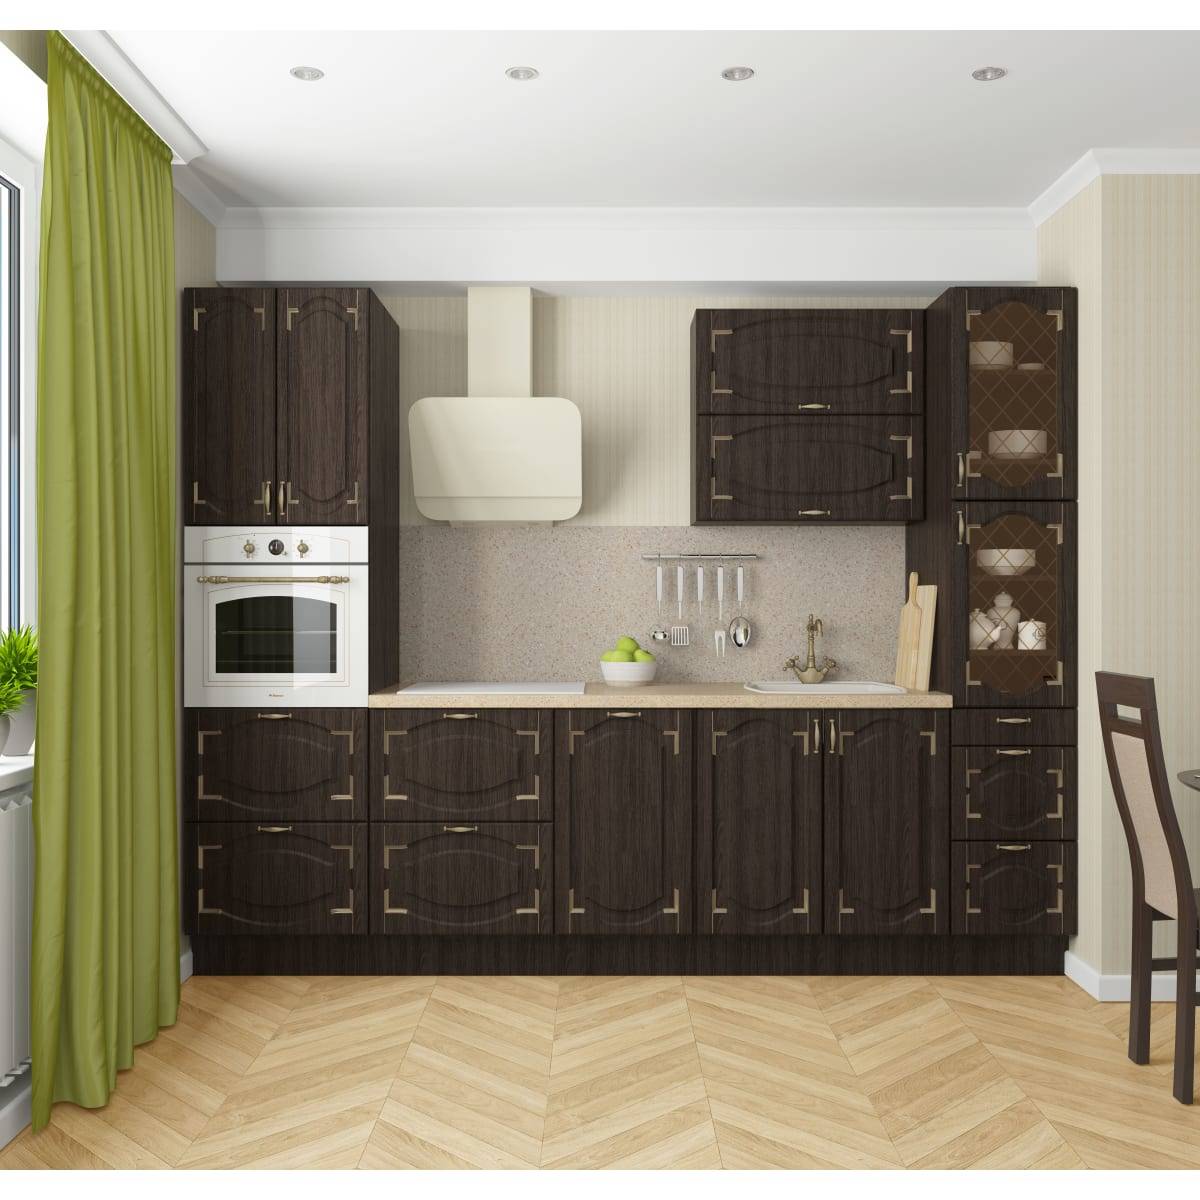 Отзывы о кухнях леруа мерлен: 47 реальных фото в квартирах и салонах